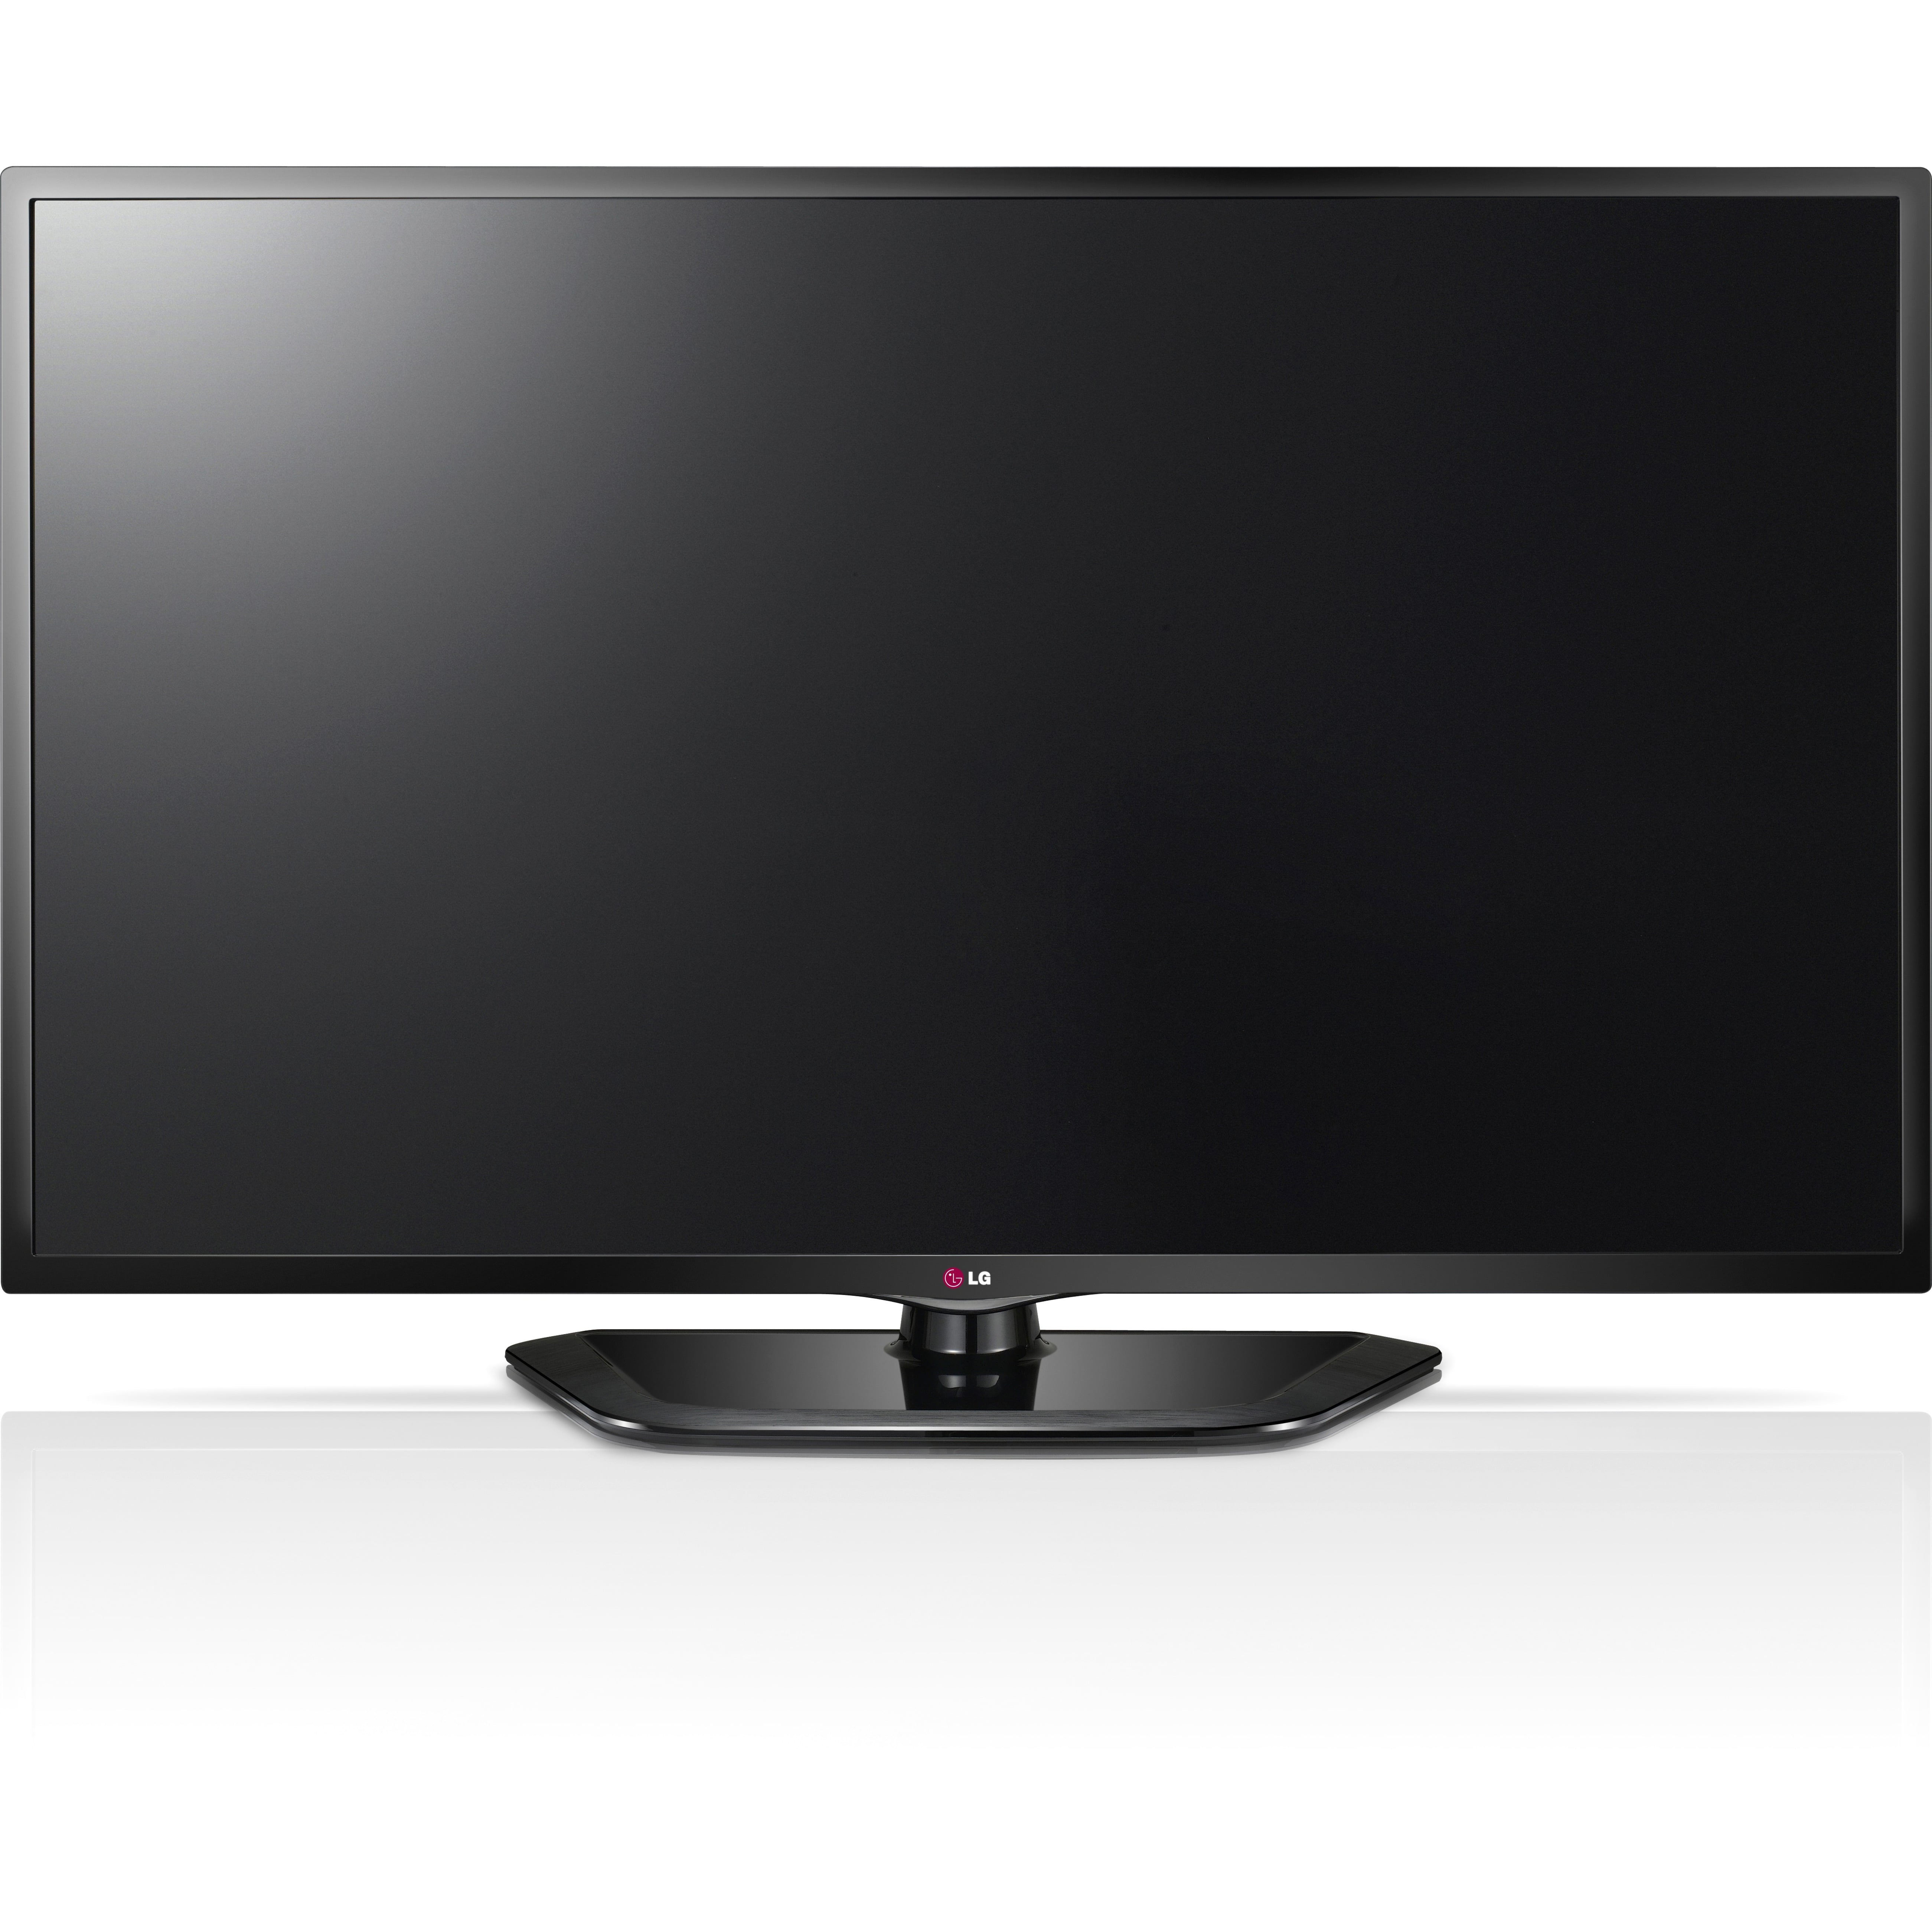 Куплю телевизор в россии. LG 47ld750. Телевизор LG 37lg6000 37". LG Smart TV 42 дюйма. Телевизор LG 42lh4900 42".